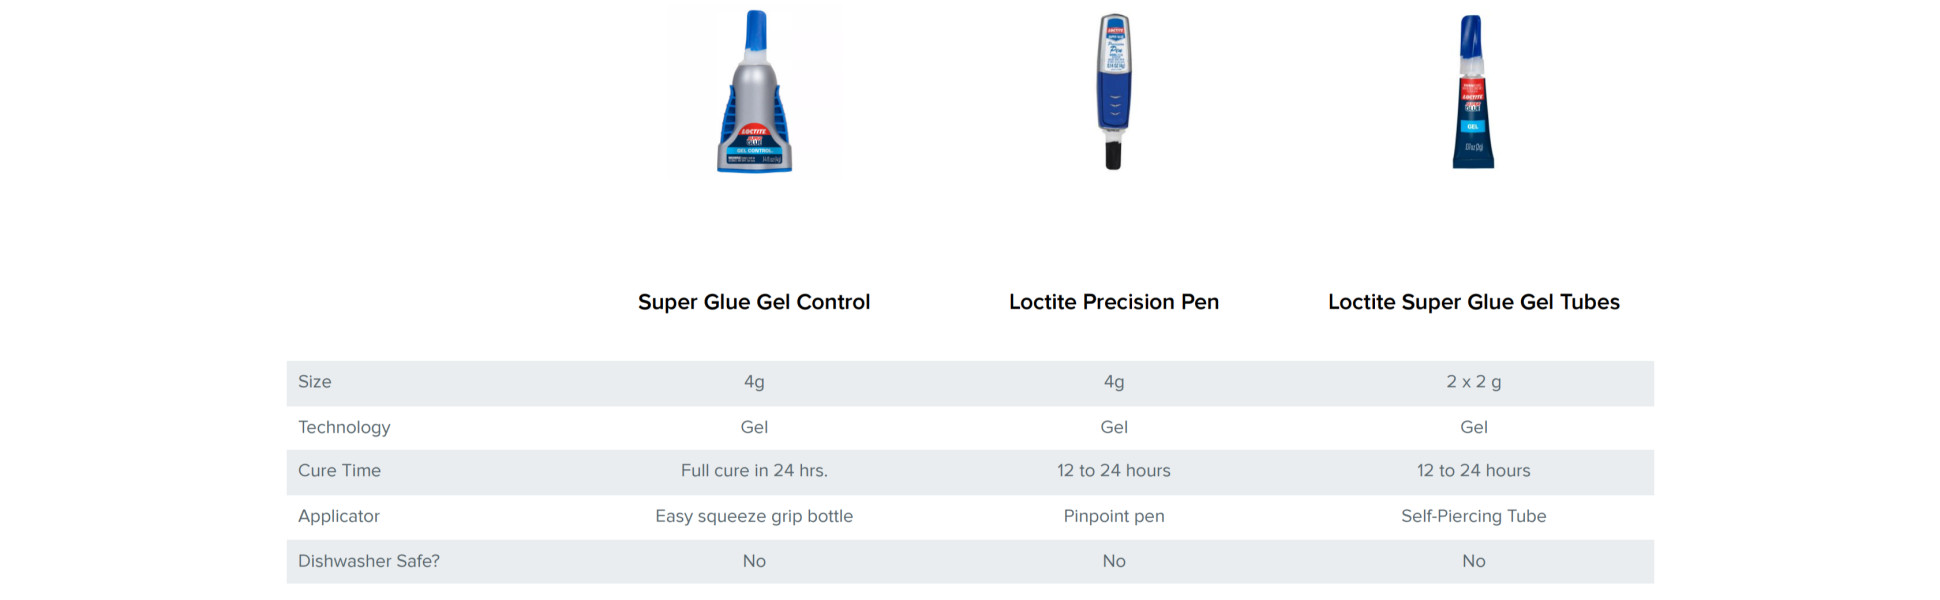 3 Pack Loctite Super Glue Gel Control-.14oz 30379 - GettyCrafts